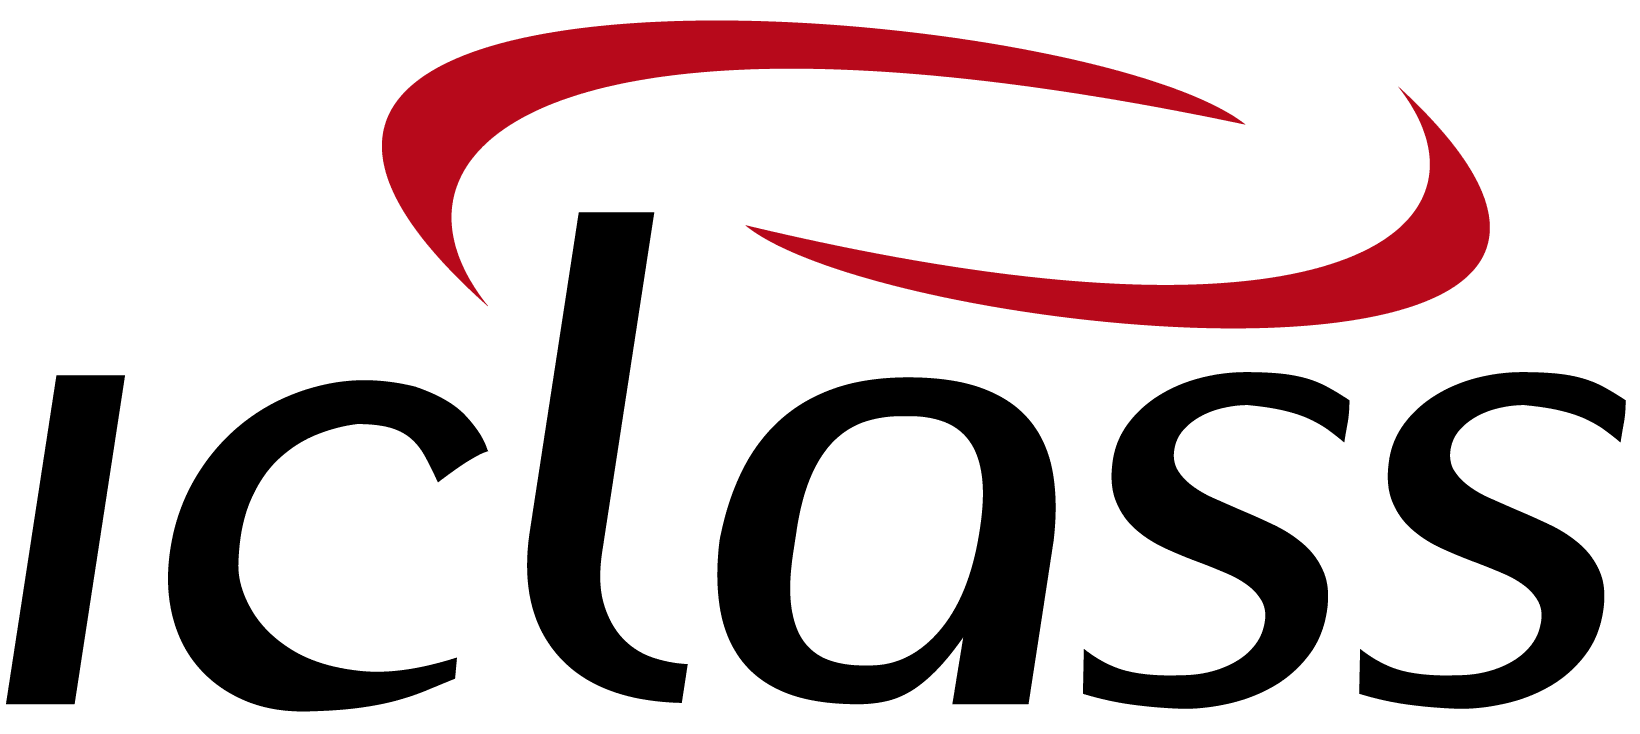 logo IClass Software de Ordem de Serviço Online Soluções